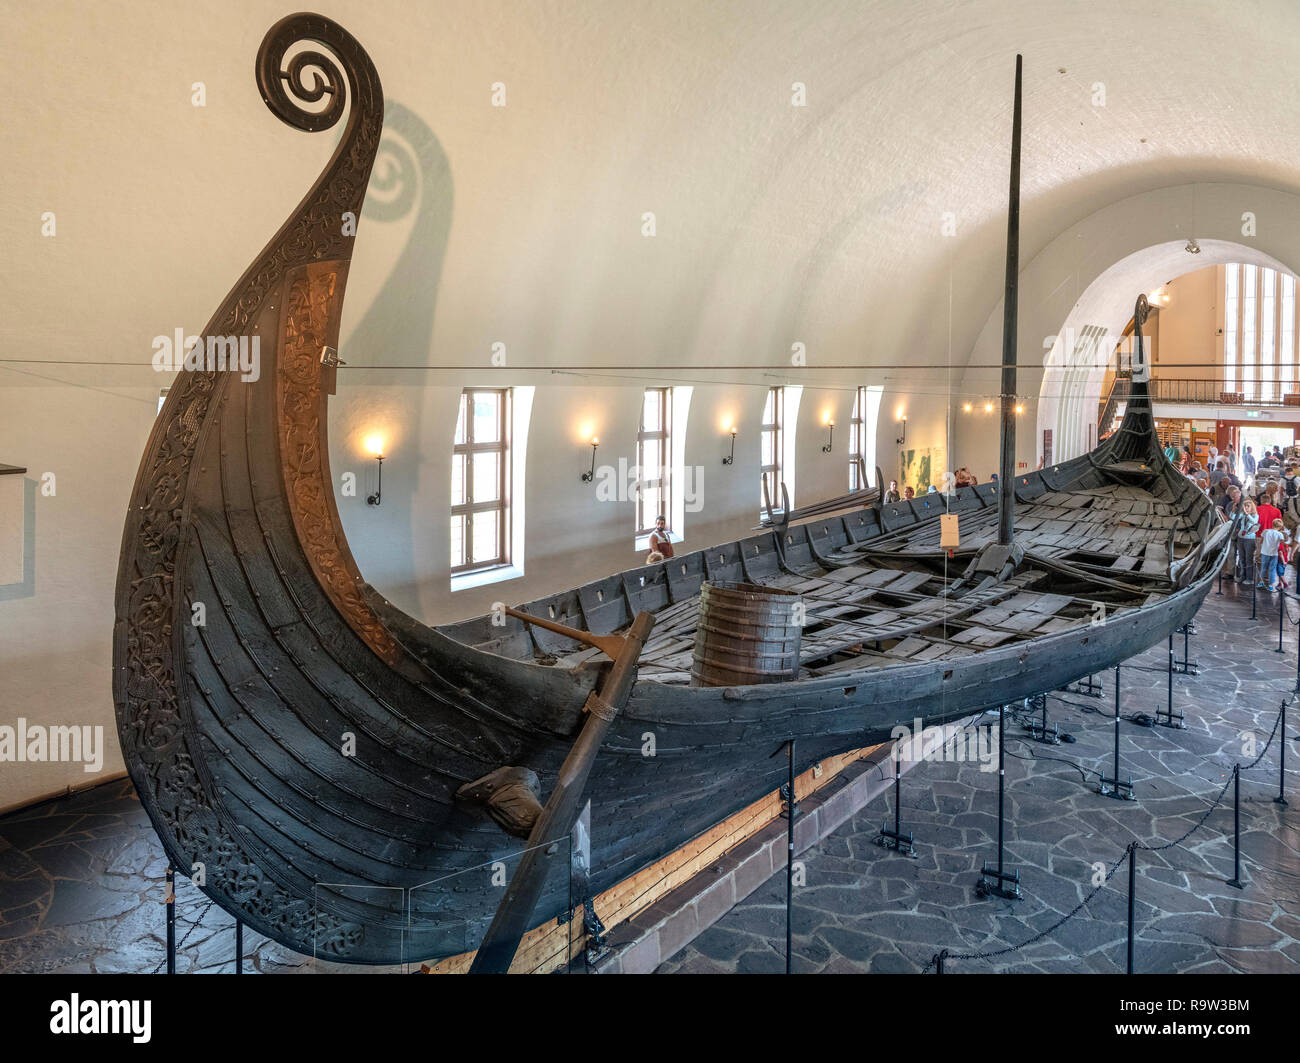 Le navire Oseberg (Osebergskipet) dans le Viking Ship Museum (Vikingskipshuset), Bygdøy, Oslo, Norvège Banque D'Images